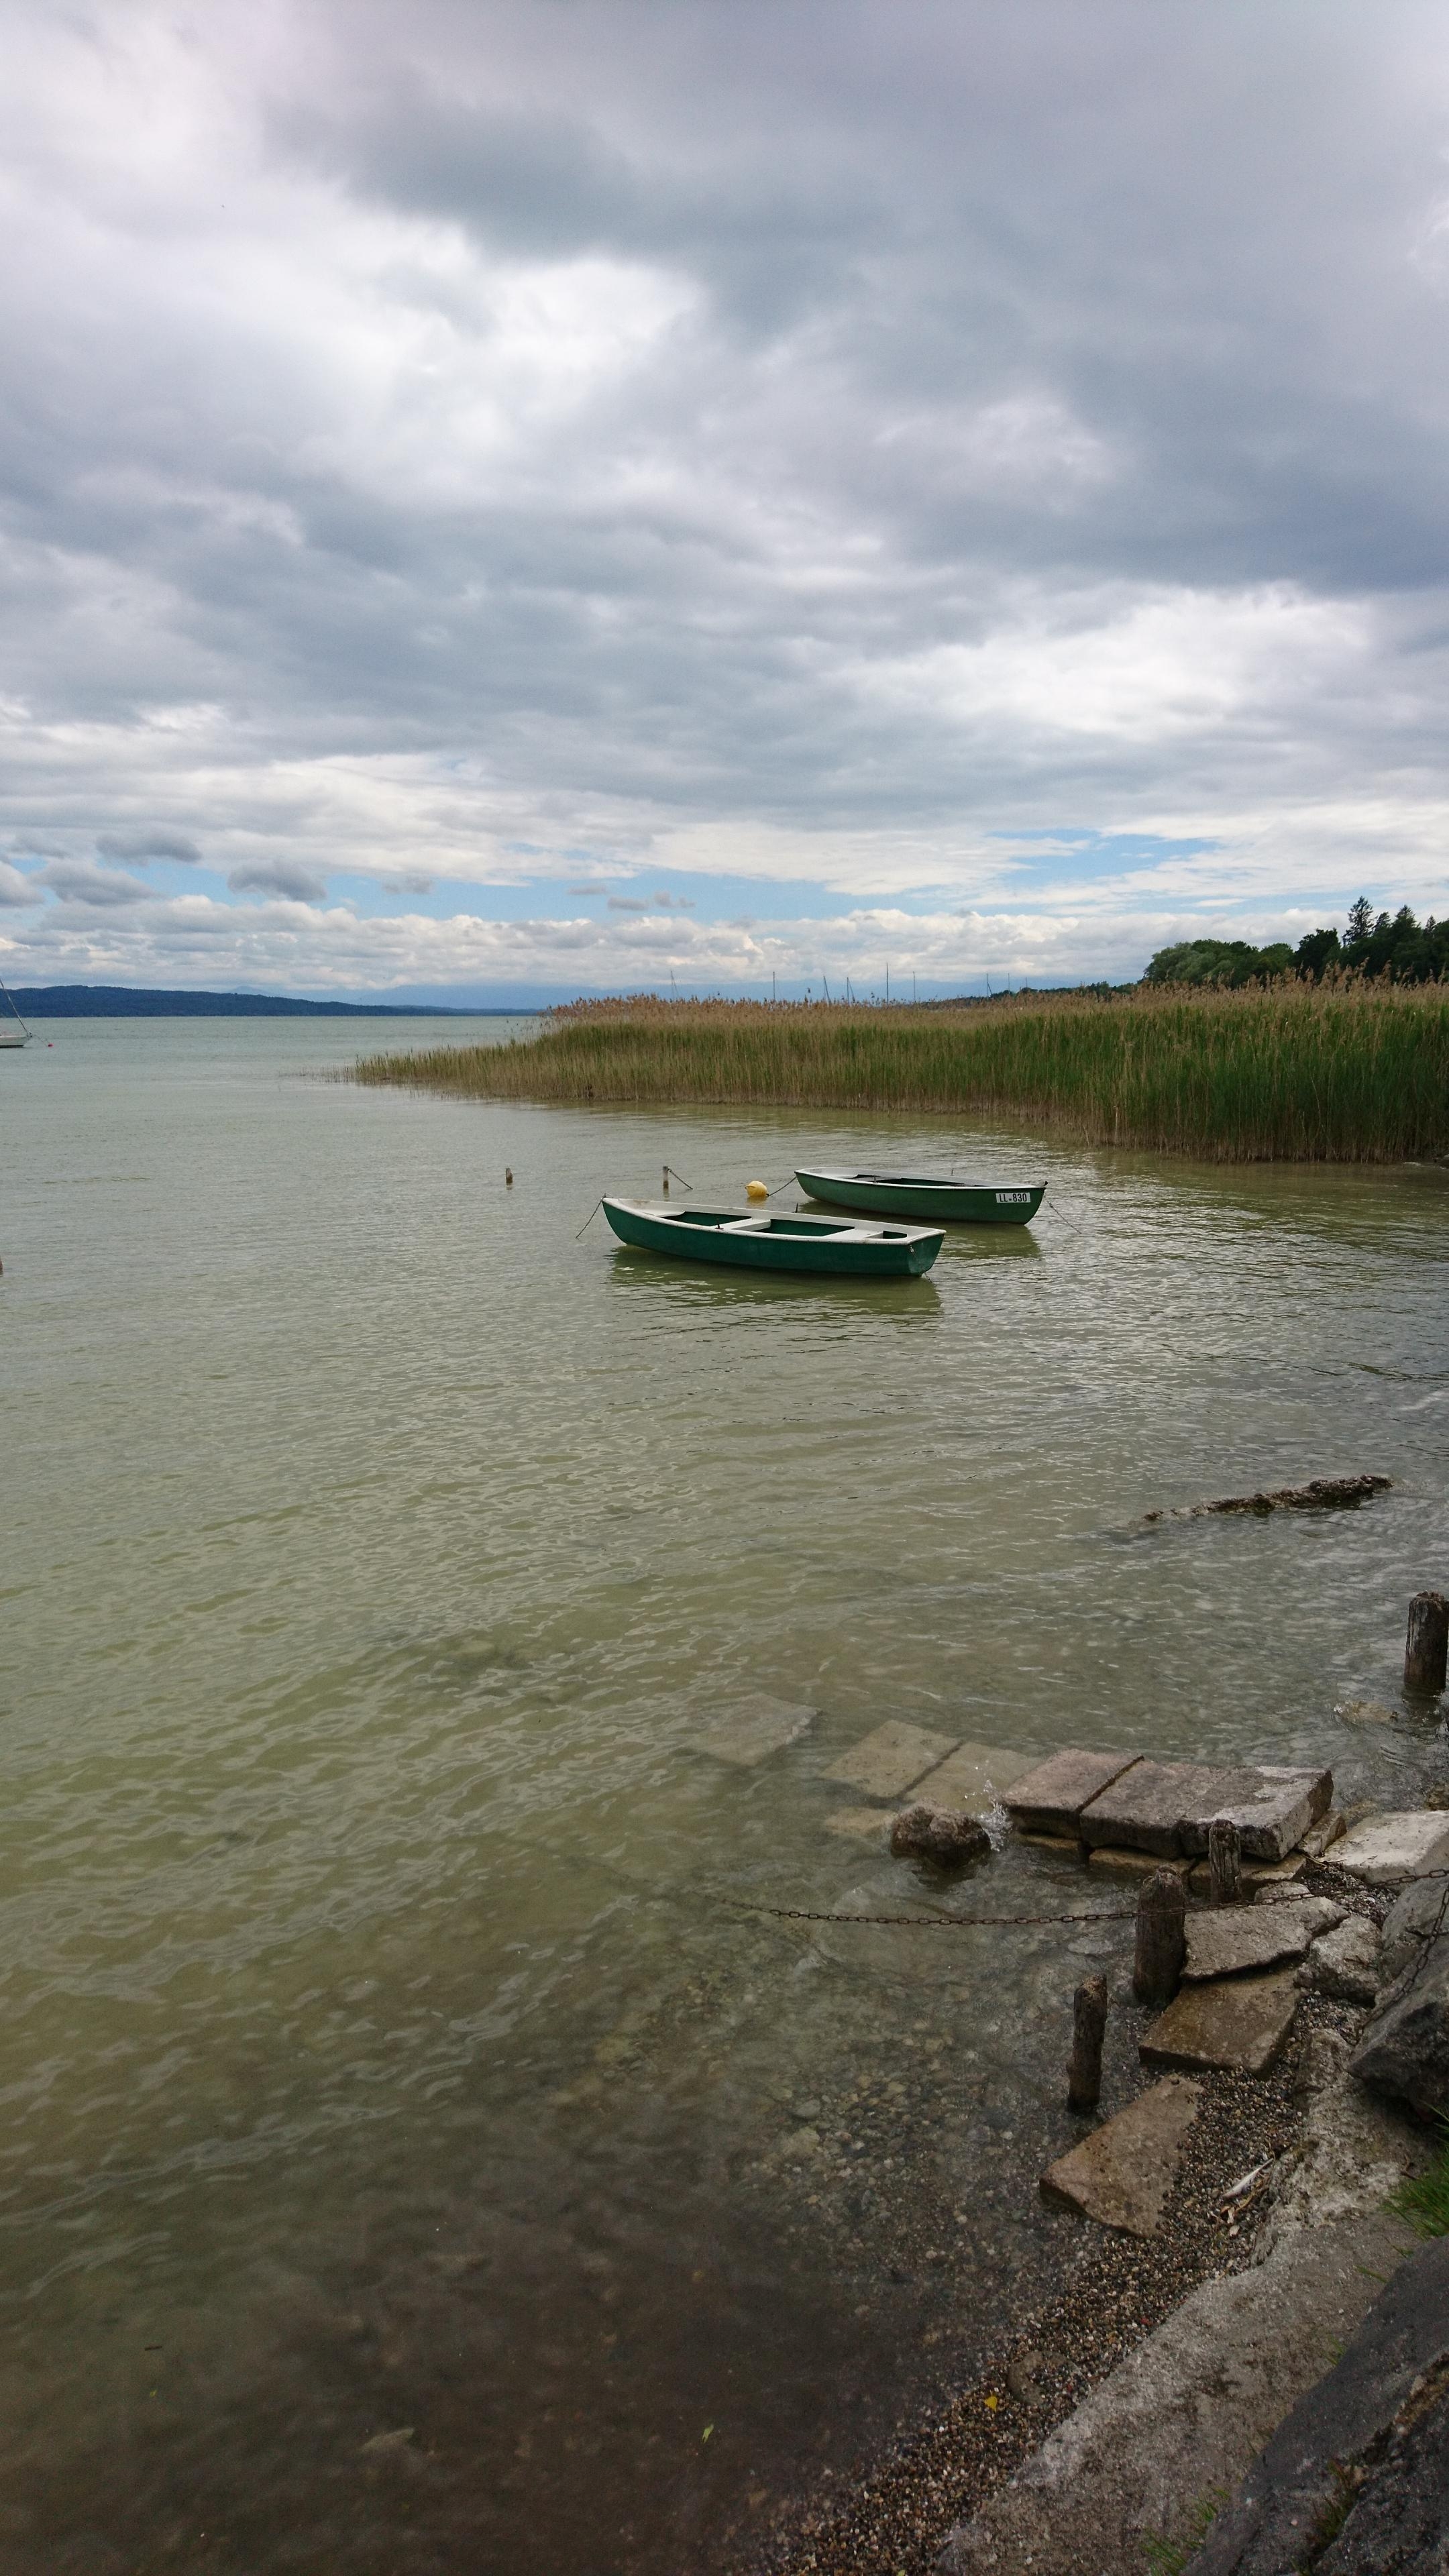 Heute mal wieder den Weitblick und die frische Prise an einem der Seen im Münchner Umland genossen. 